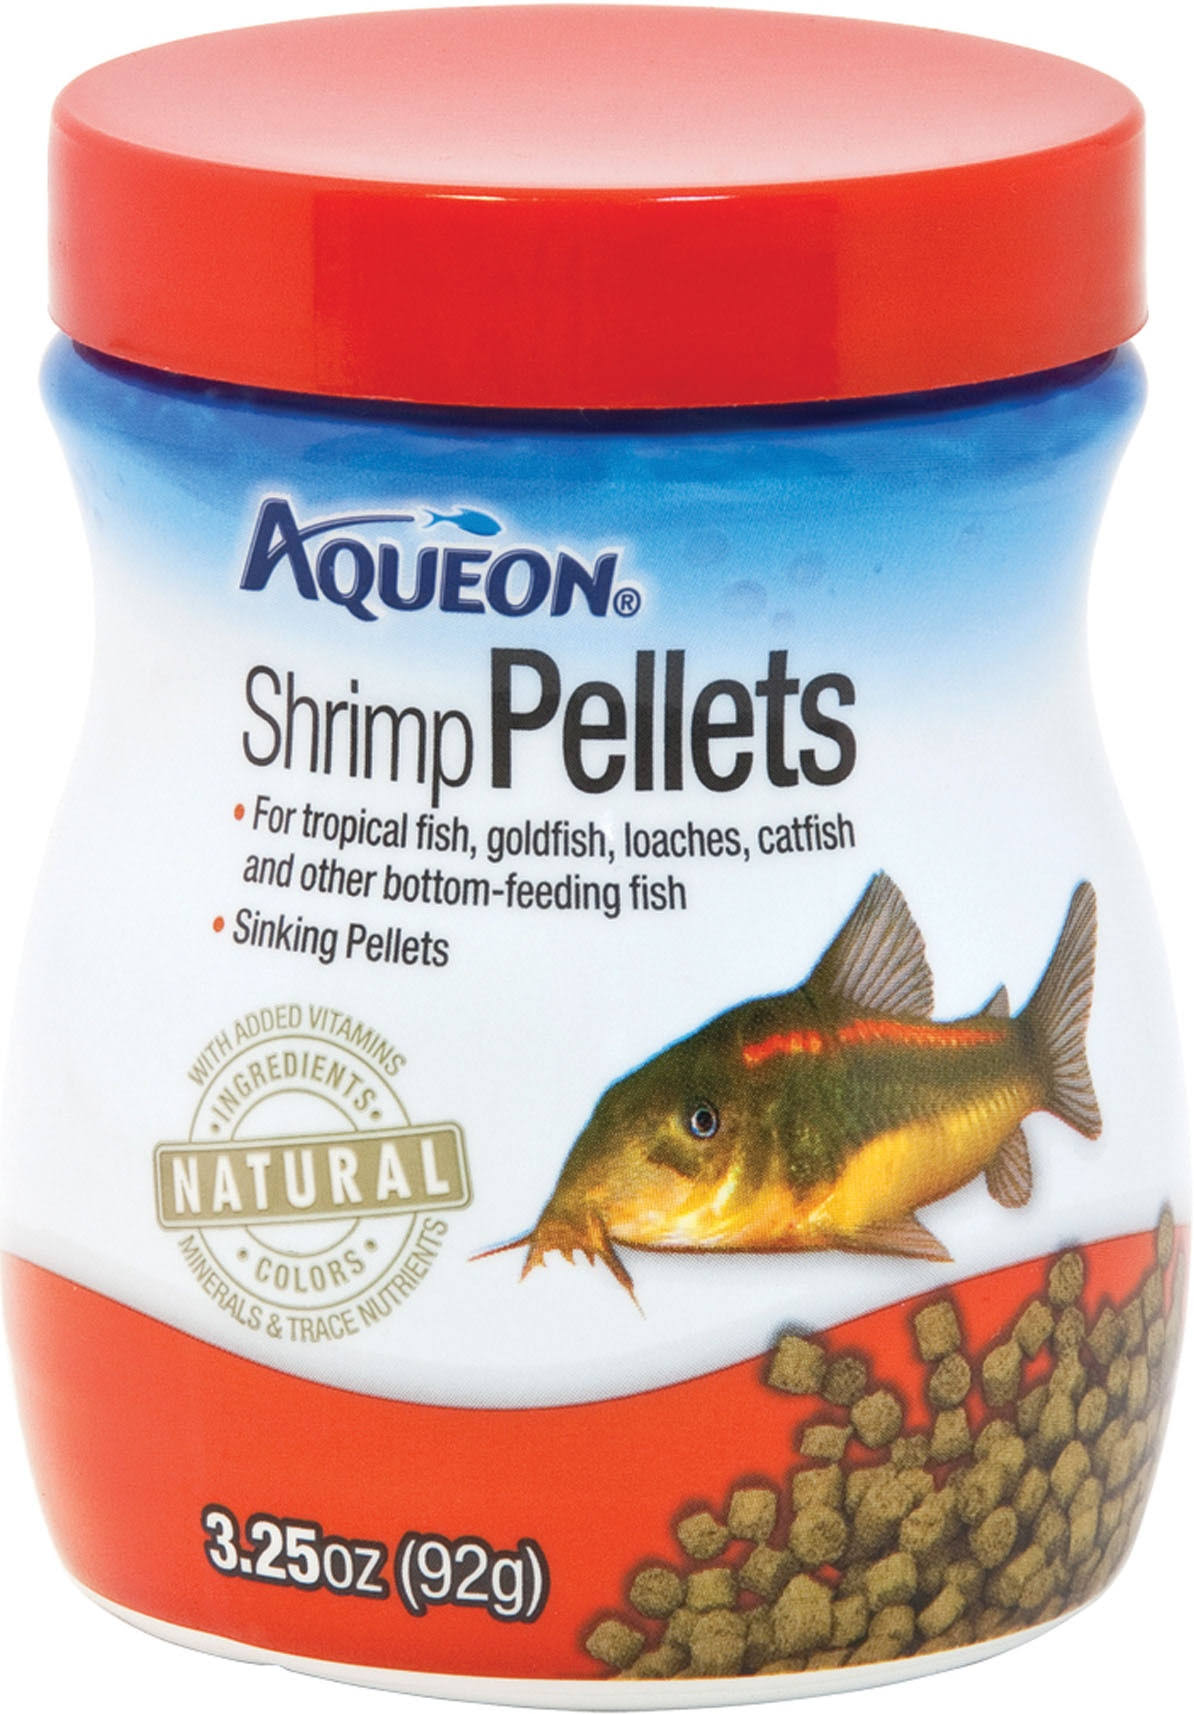 Aqueon Shrimp Pellets Fish Food - 3.25oz